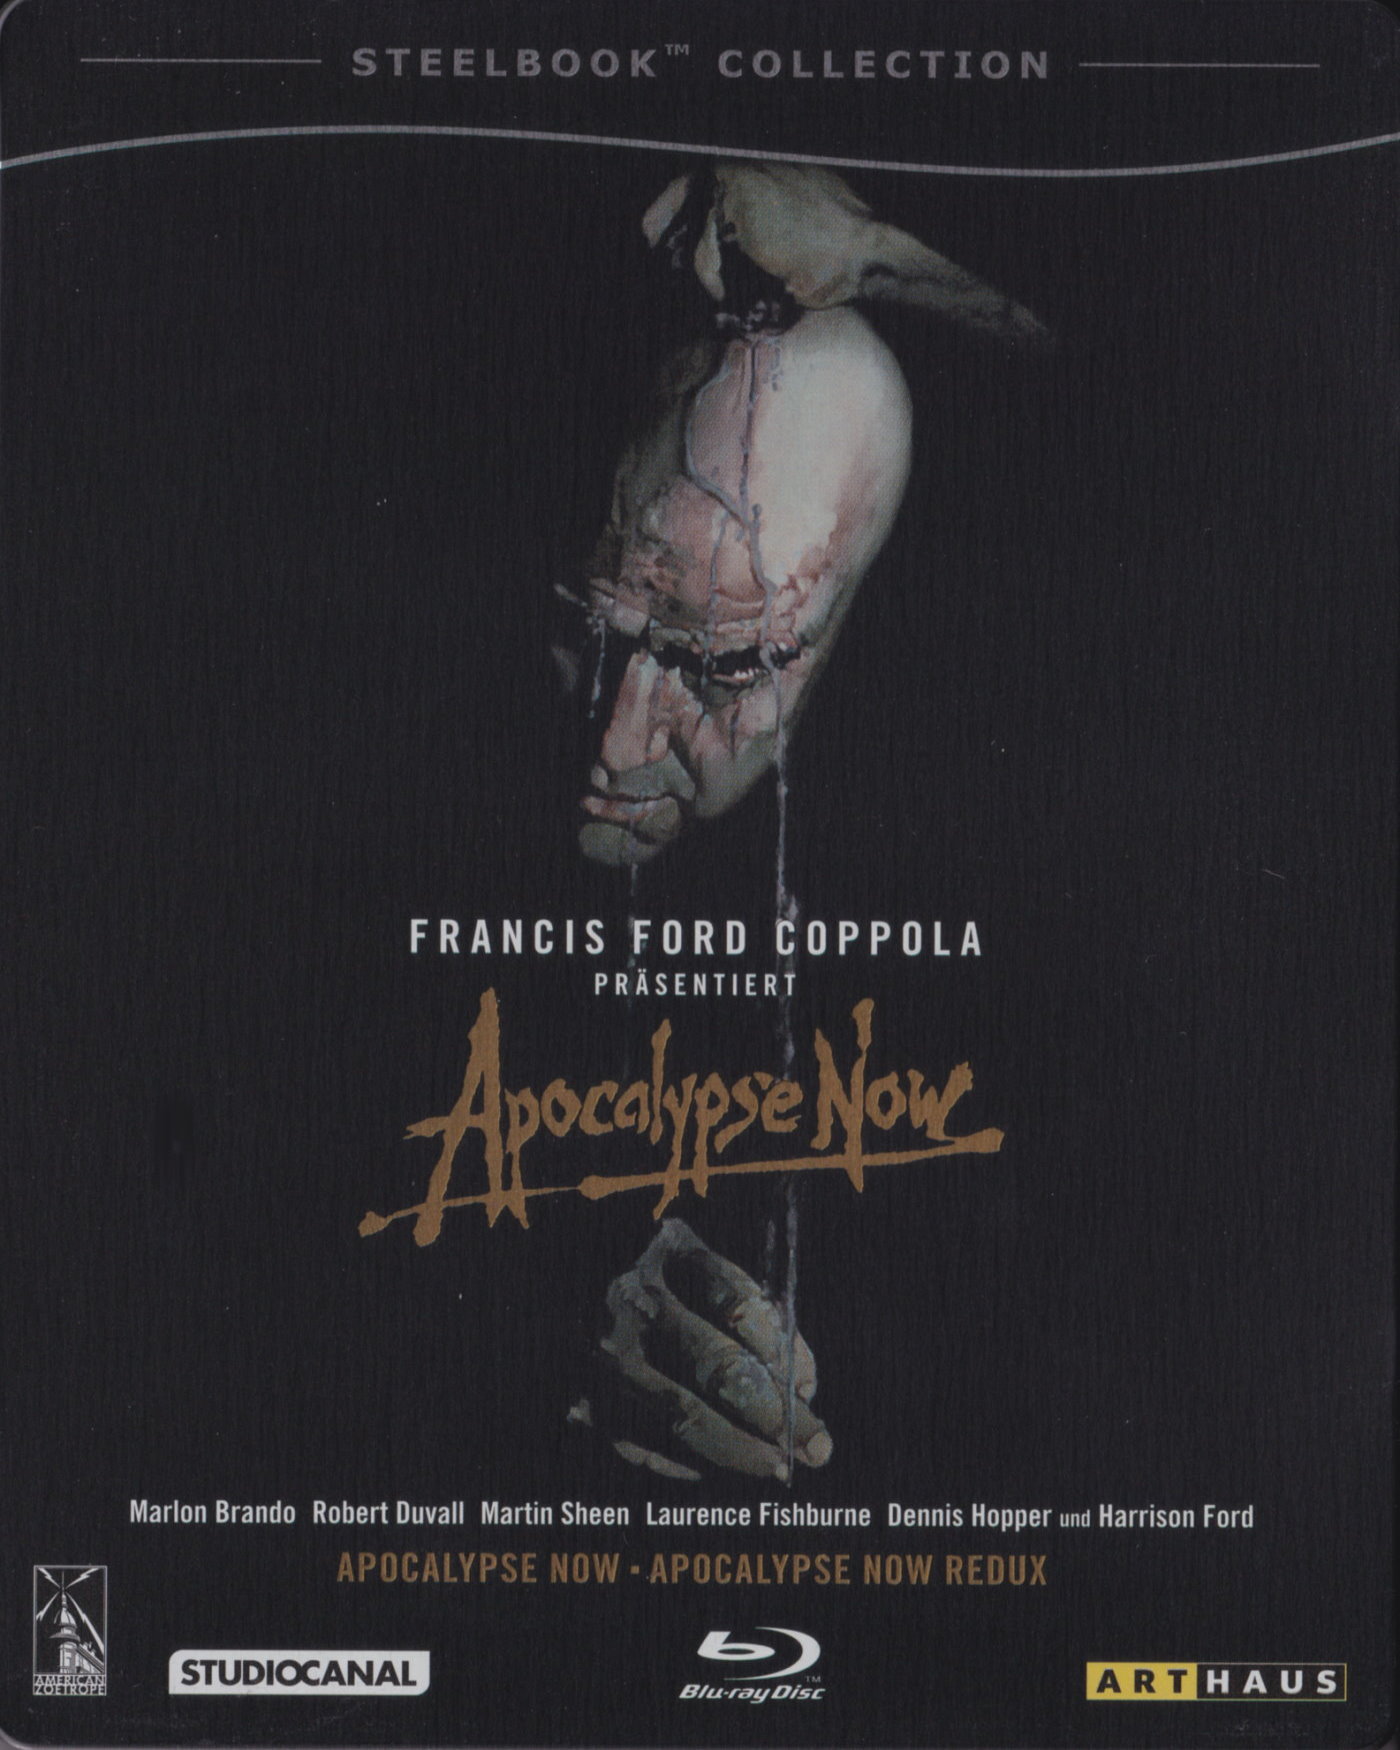 Cover - Apocalypse Now.jpg